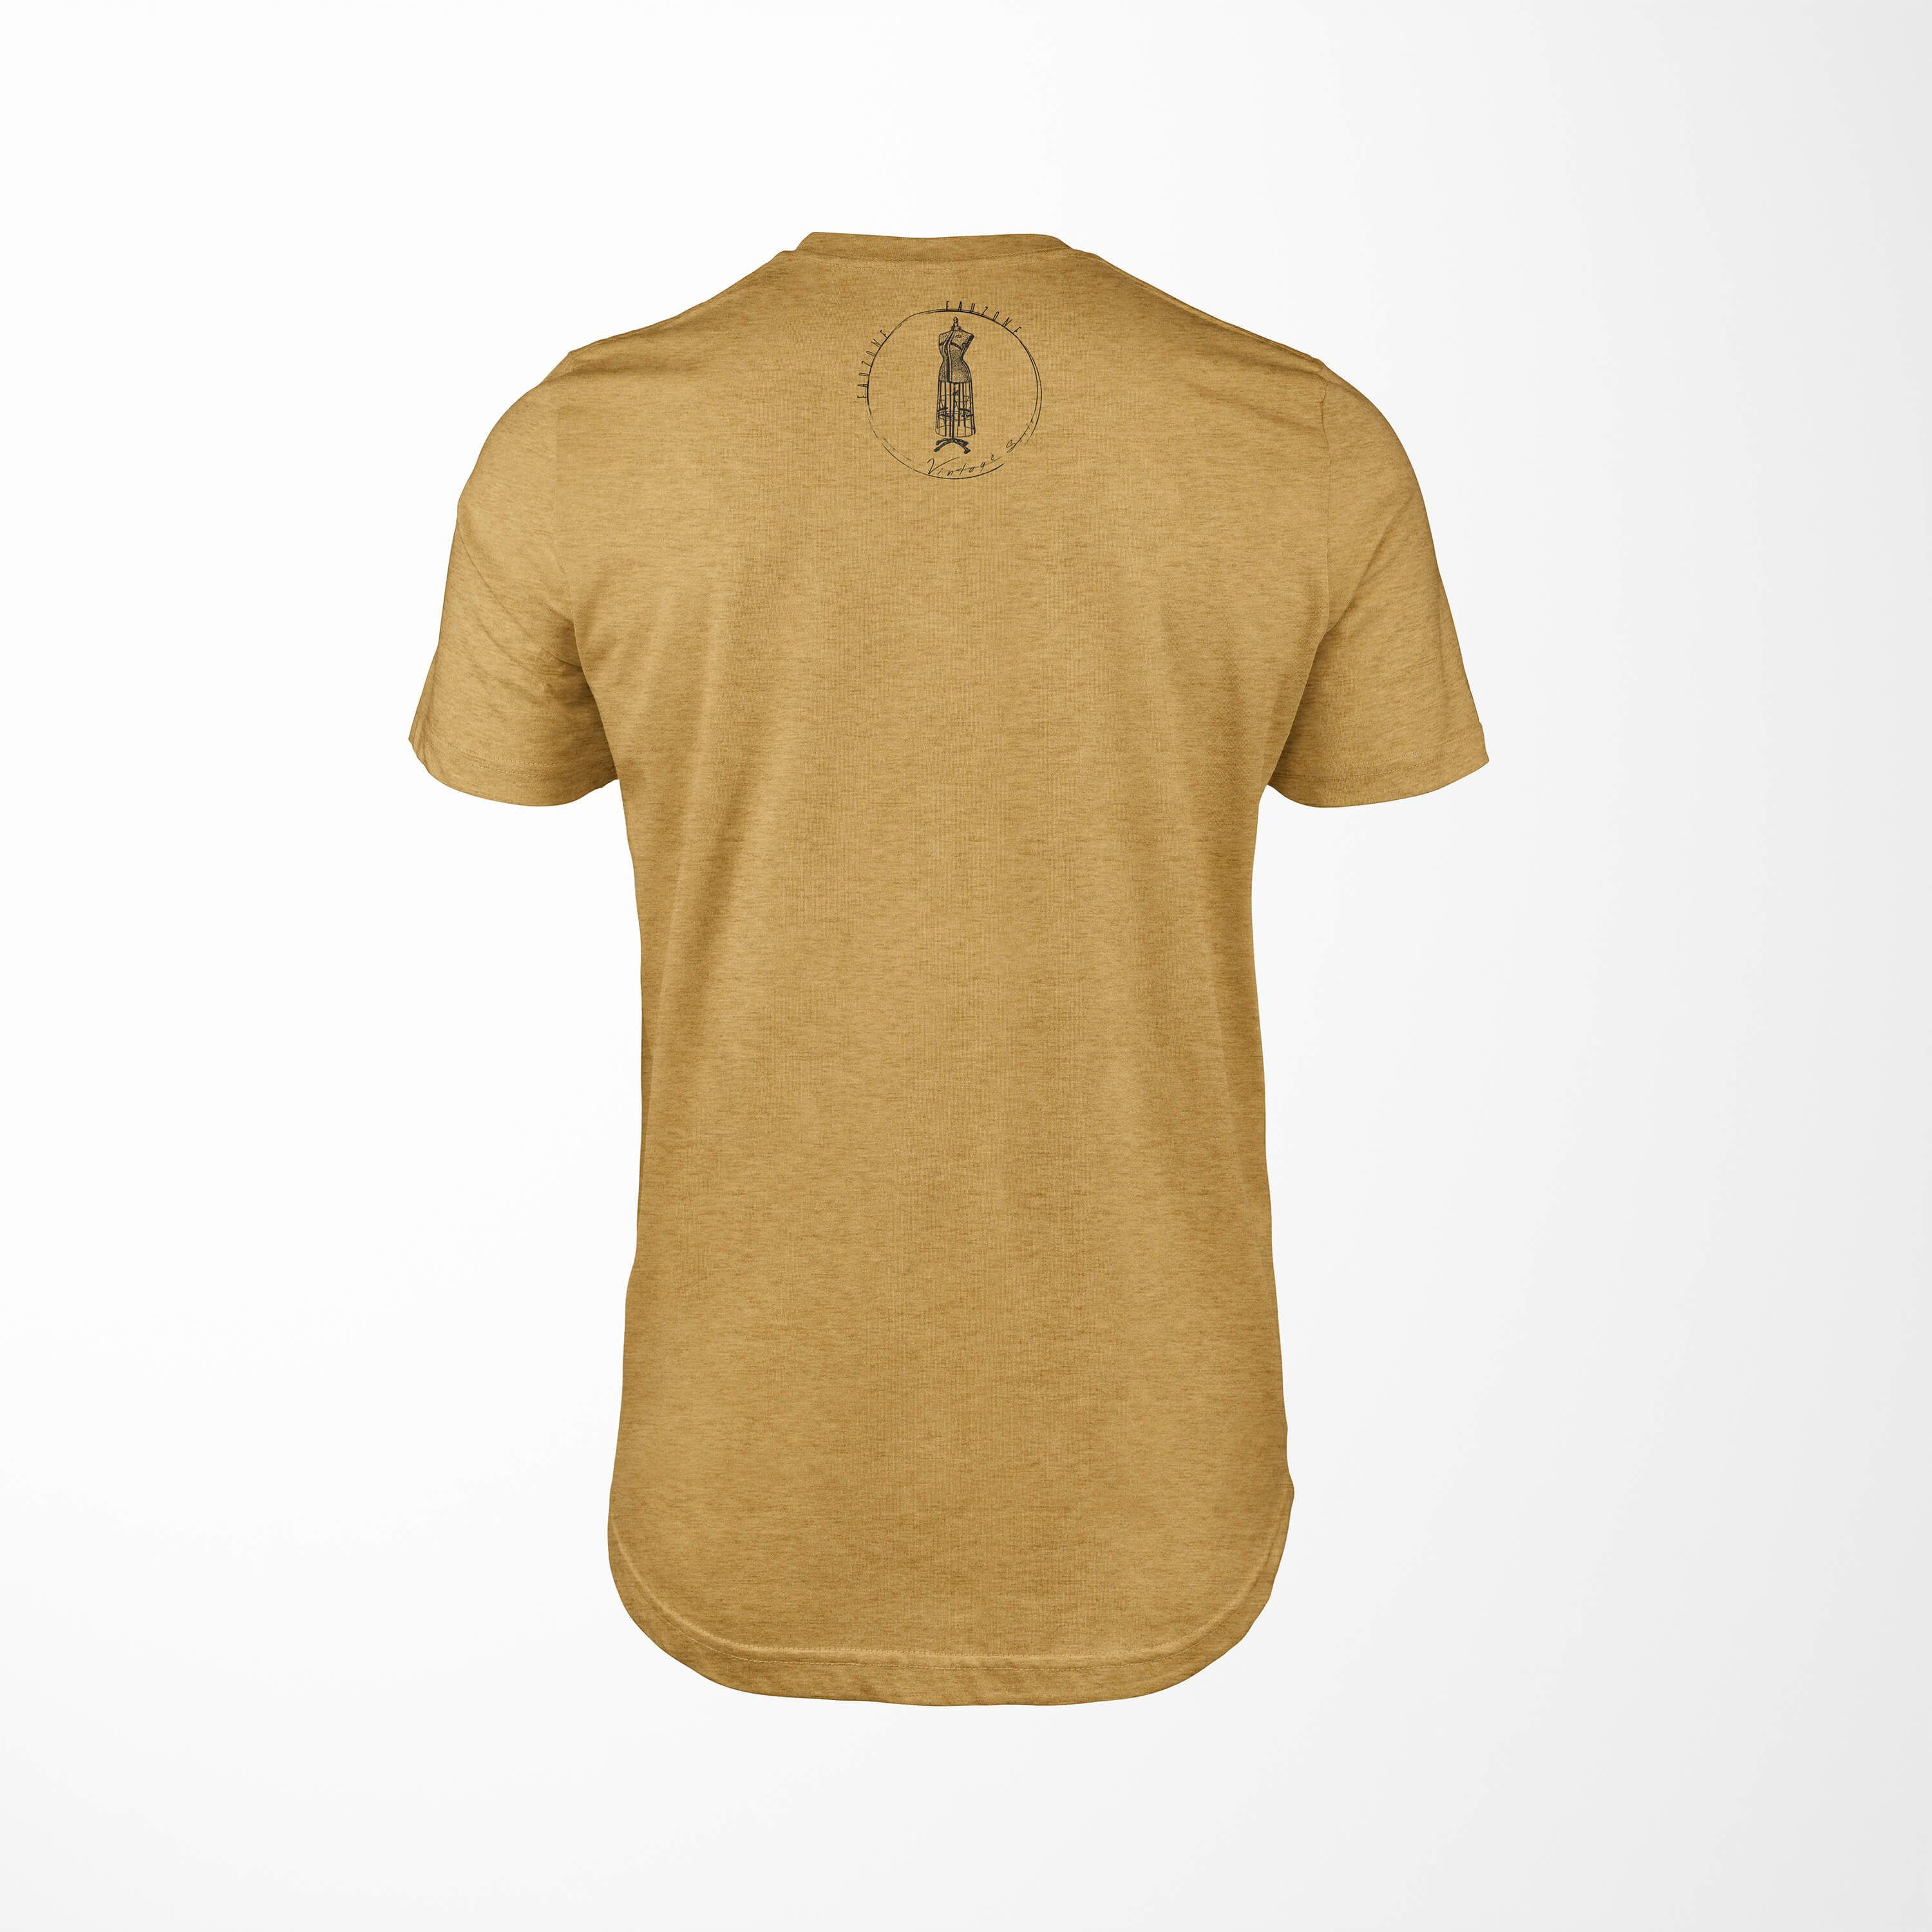 Antique Vintage Herren T-Shirt Kleiderform Art T-Shirt Sinus Gold